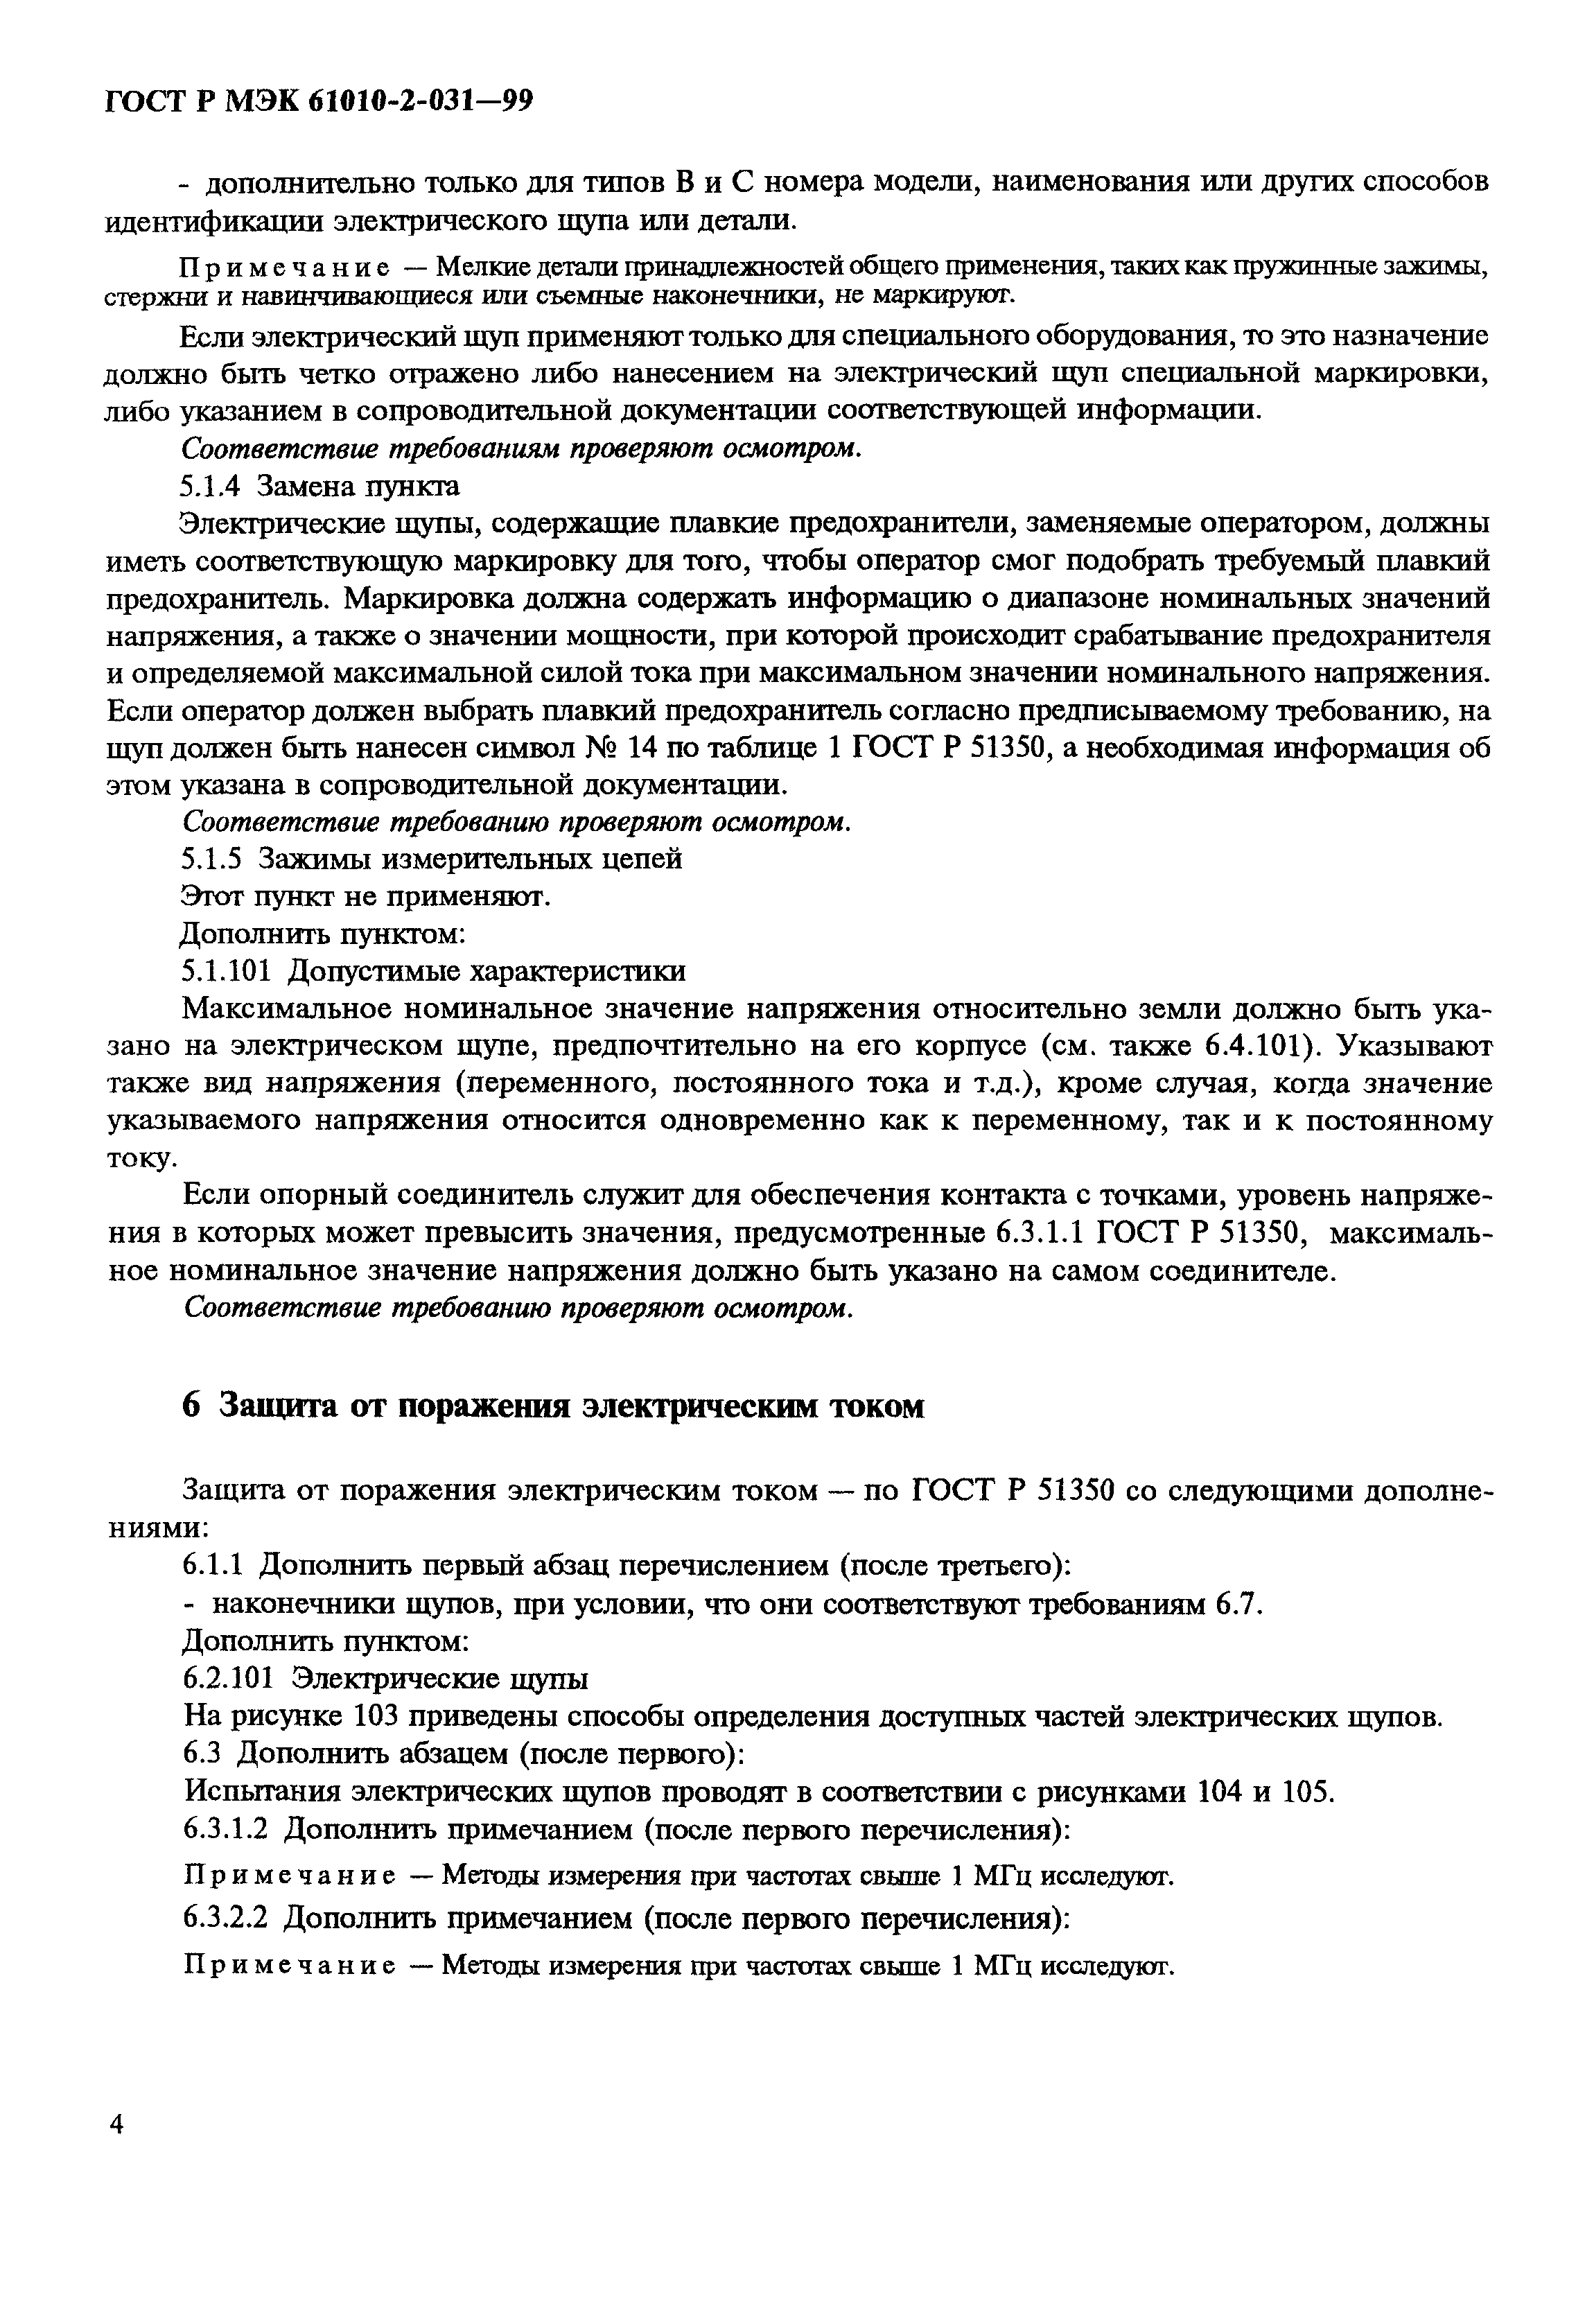 ГОСТ Р МЭК 61010-2-031-99